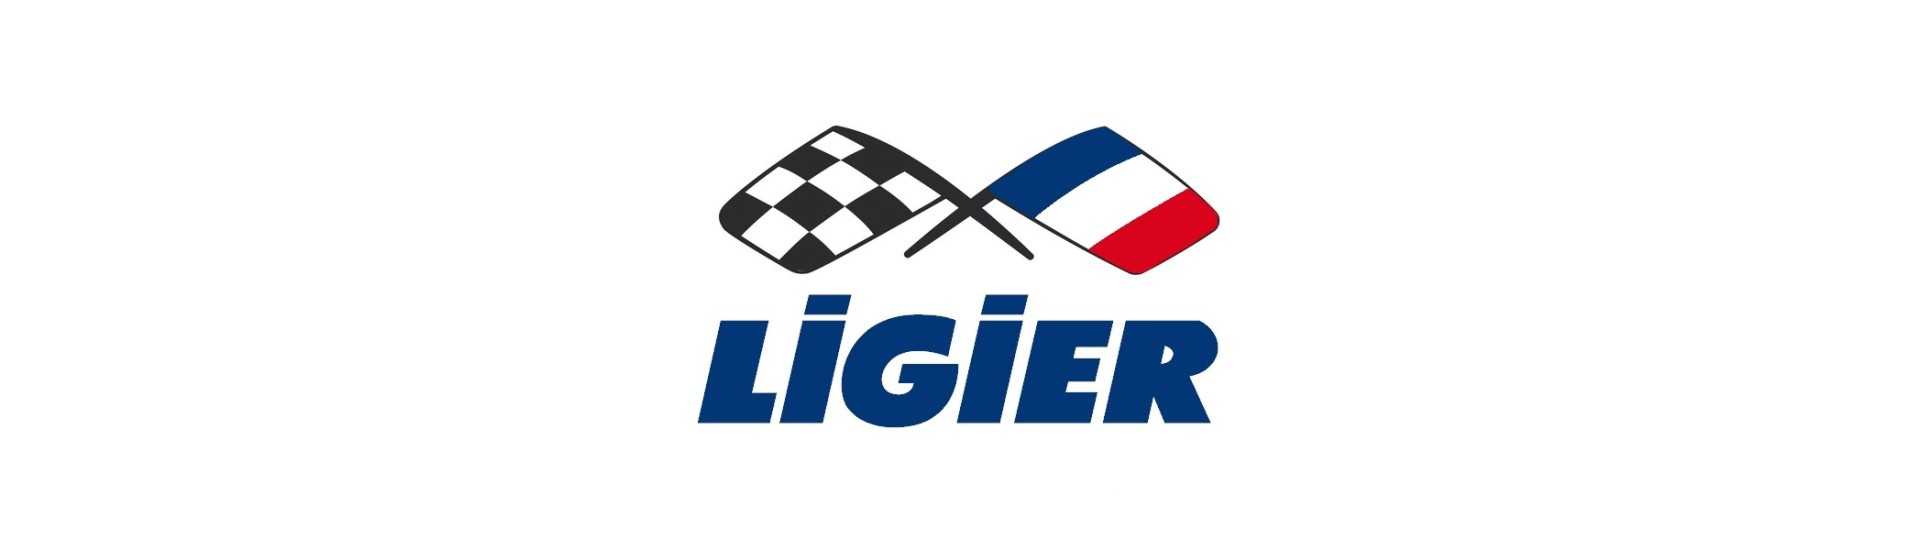 Gorra de tanque al mejor precio para coche sin permiso Ligier